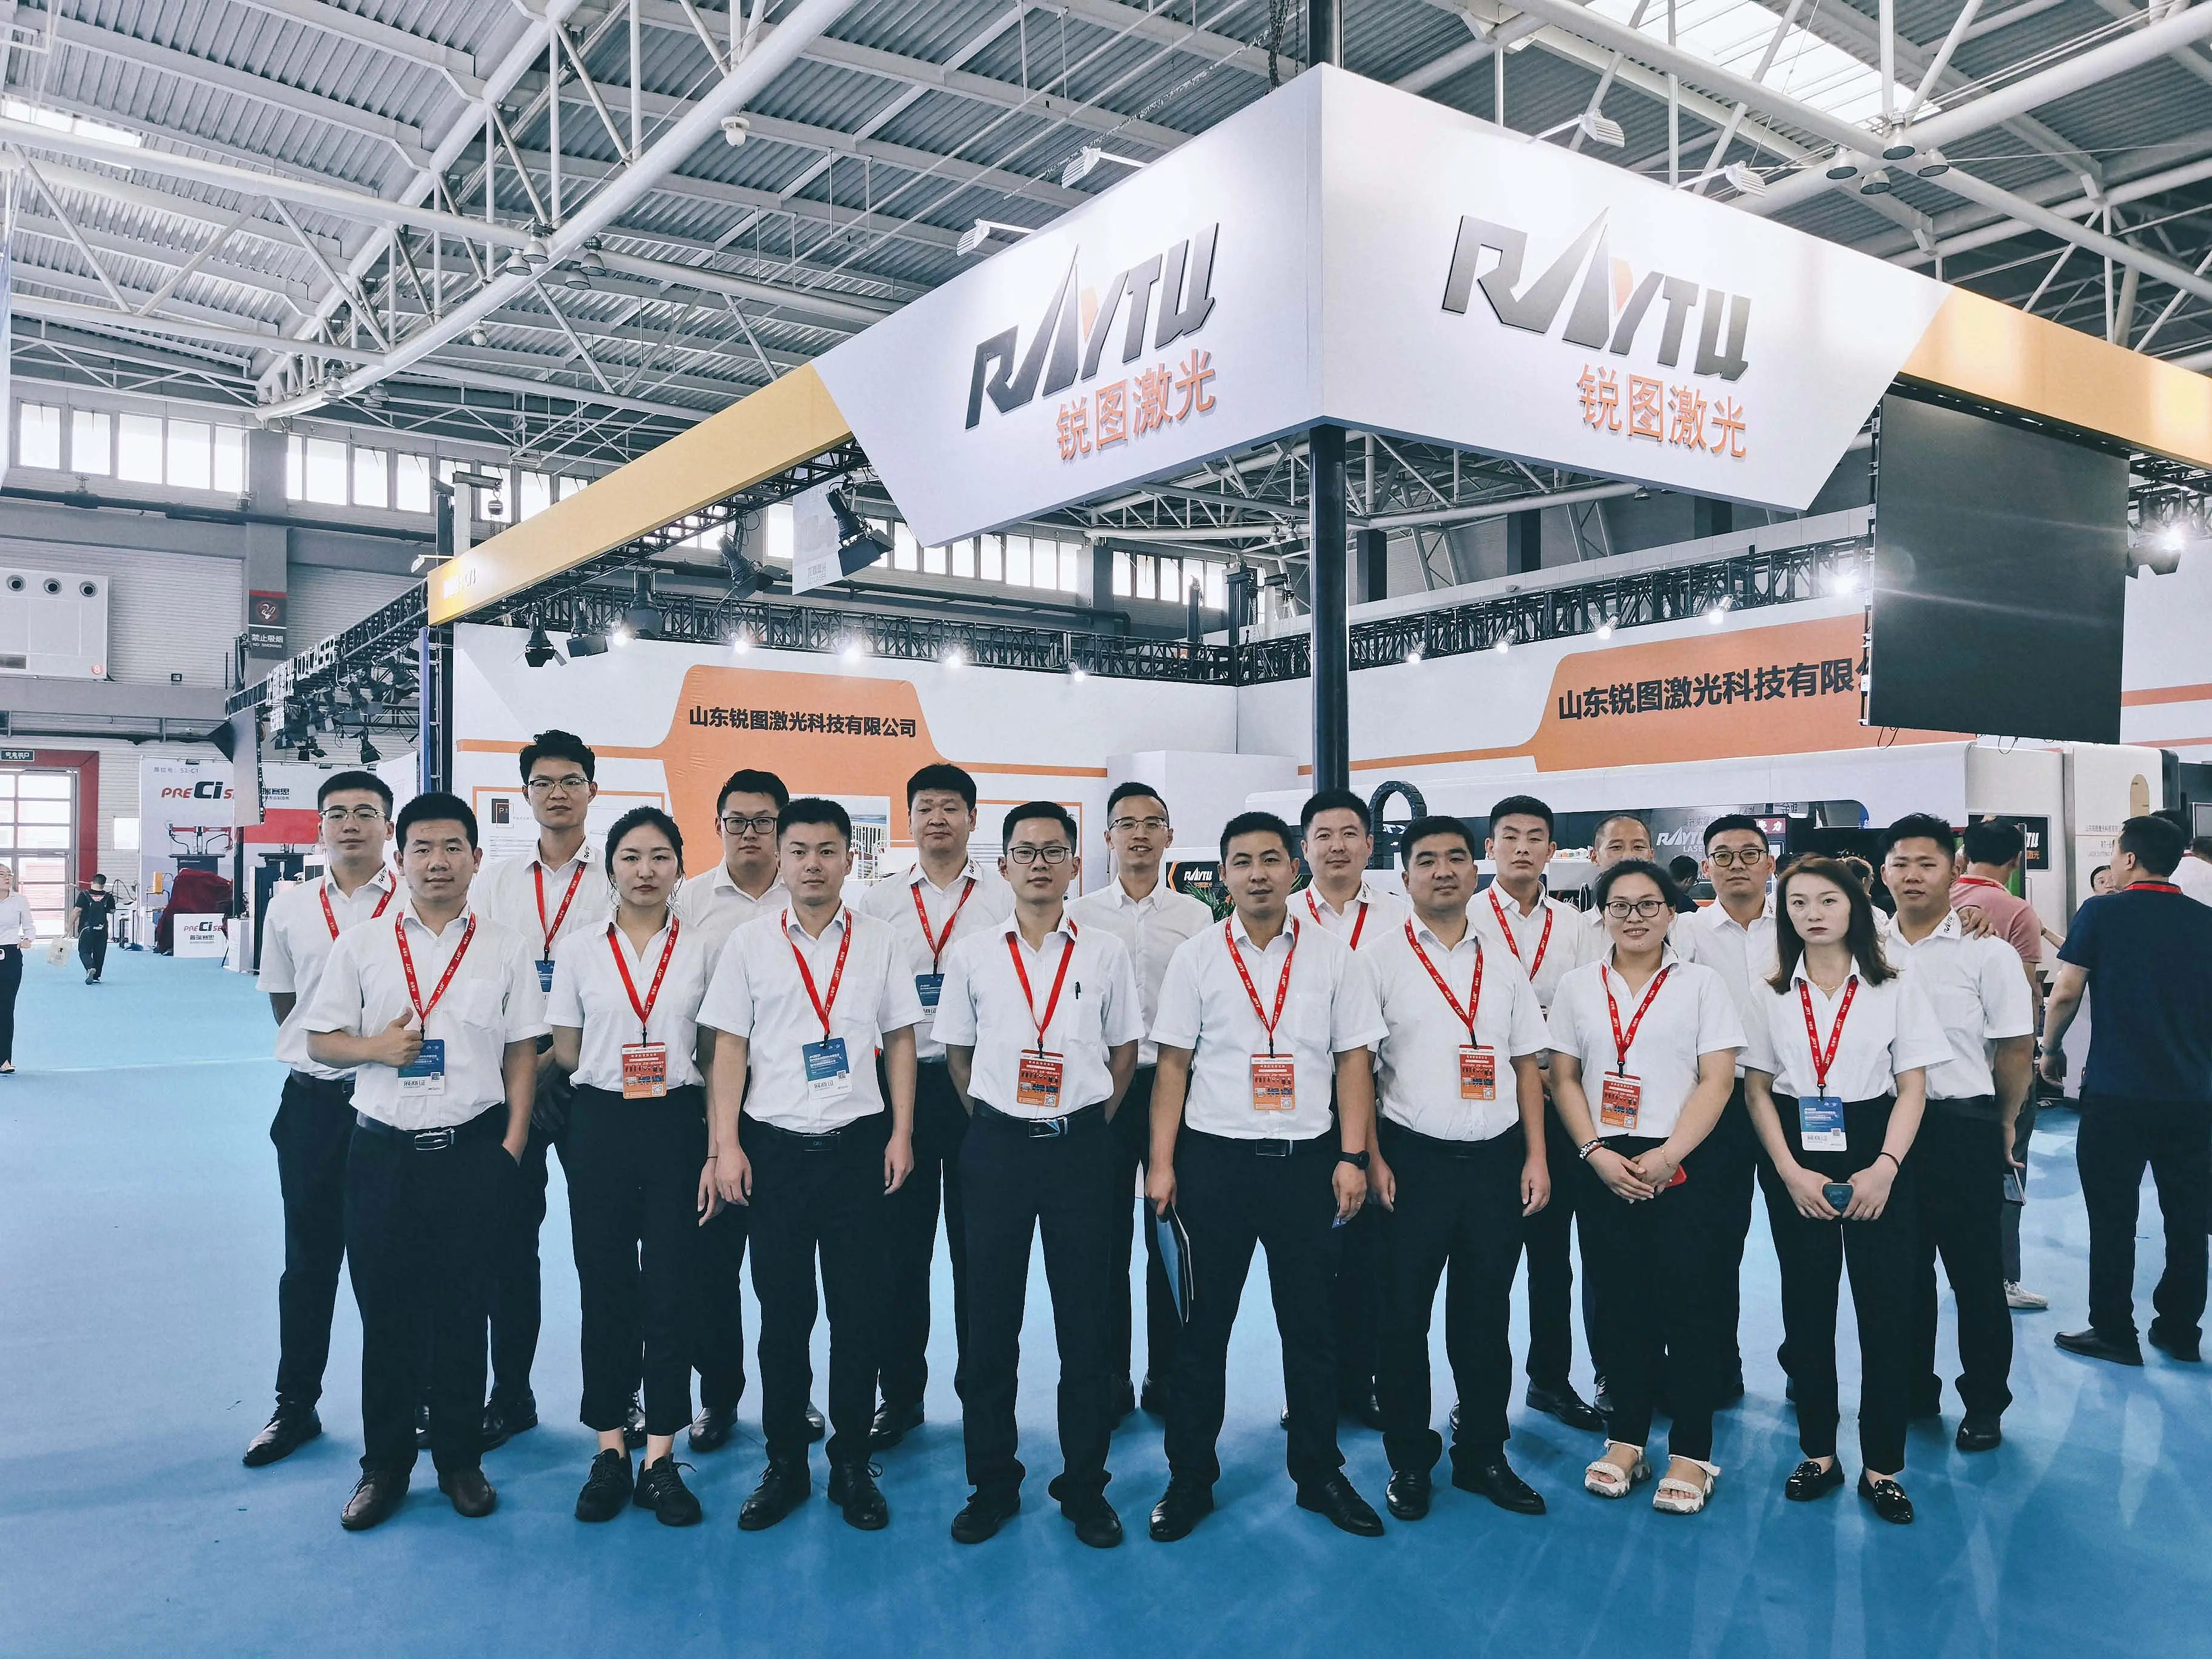 Raytu Laser FOI convidado a participar Da 24ª Exposição Internacional de Ferramentas de Máquina de Qingdao (JM2021)